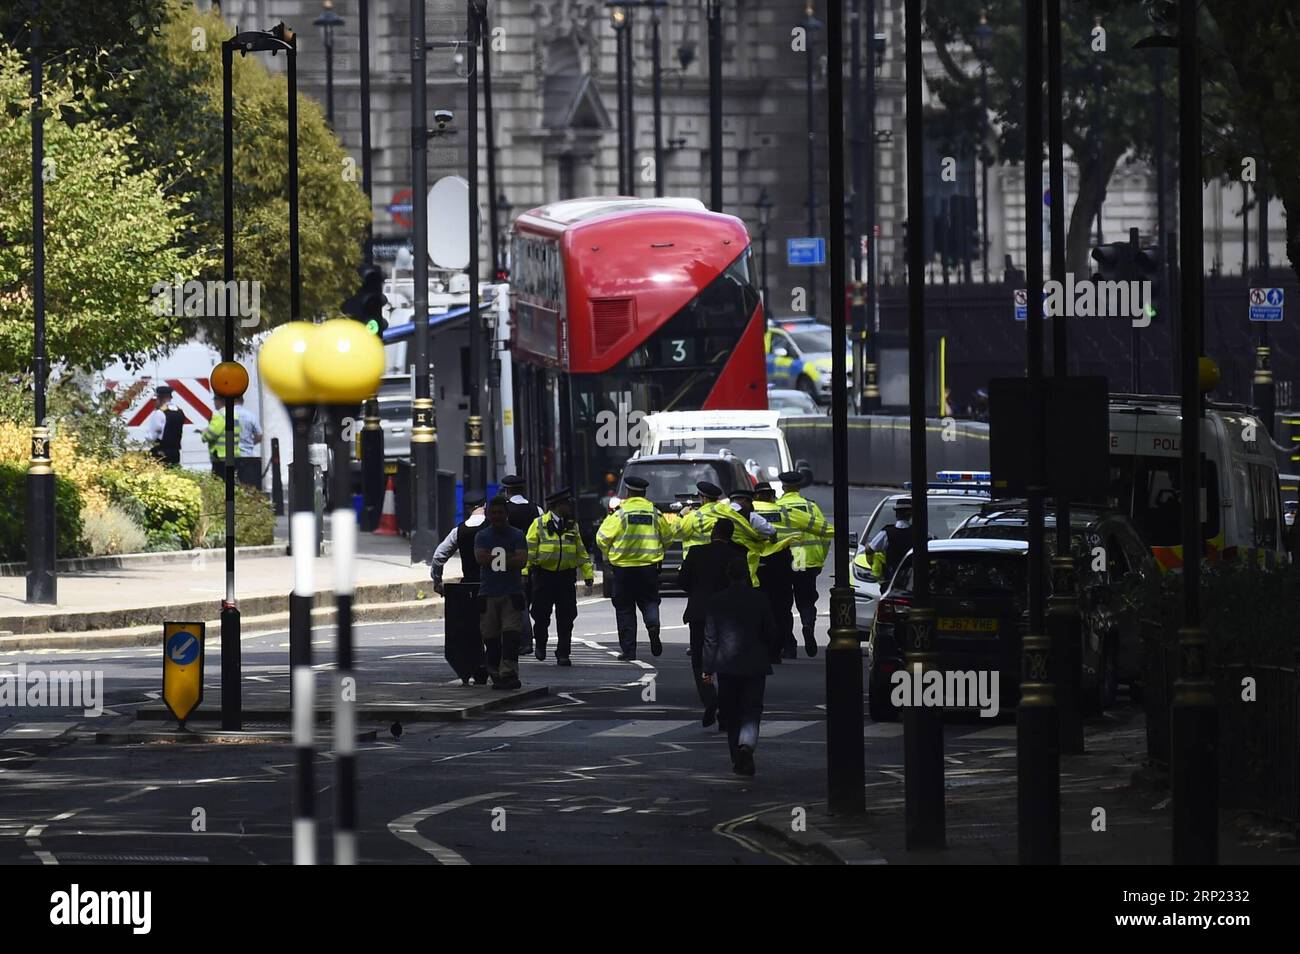 (180814) -- LONDRES, 14 août 2018 -- la police travaille sur le site d'un accident de voiture près des chambres du Parlement à Westminster, Londres, Grande-Bretagne, le 14 août 2018. Un homme a été arrêté pour suspicion d'infractions terroristes après qu'une voiture s'est écrasée contre des barrières devant les chambres du Parlement britannique, a déclaré mardi la police locale. (Qxy) GRANDE-BRETAGNE-LONDRES-PARLEMENT-ACCIDENT DE VOITURE StephenxChung PUBLICATIONxNOTxINxCHN Banque D'Images